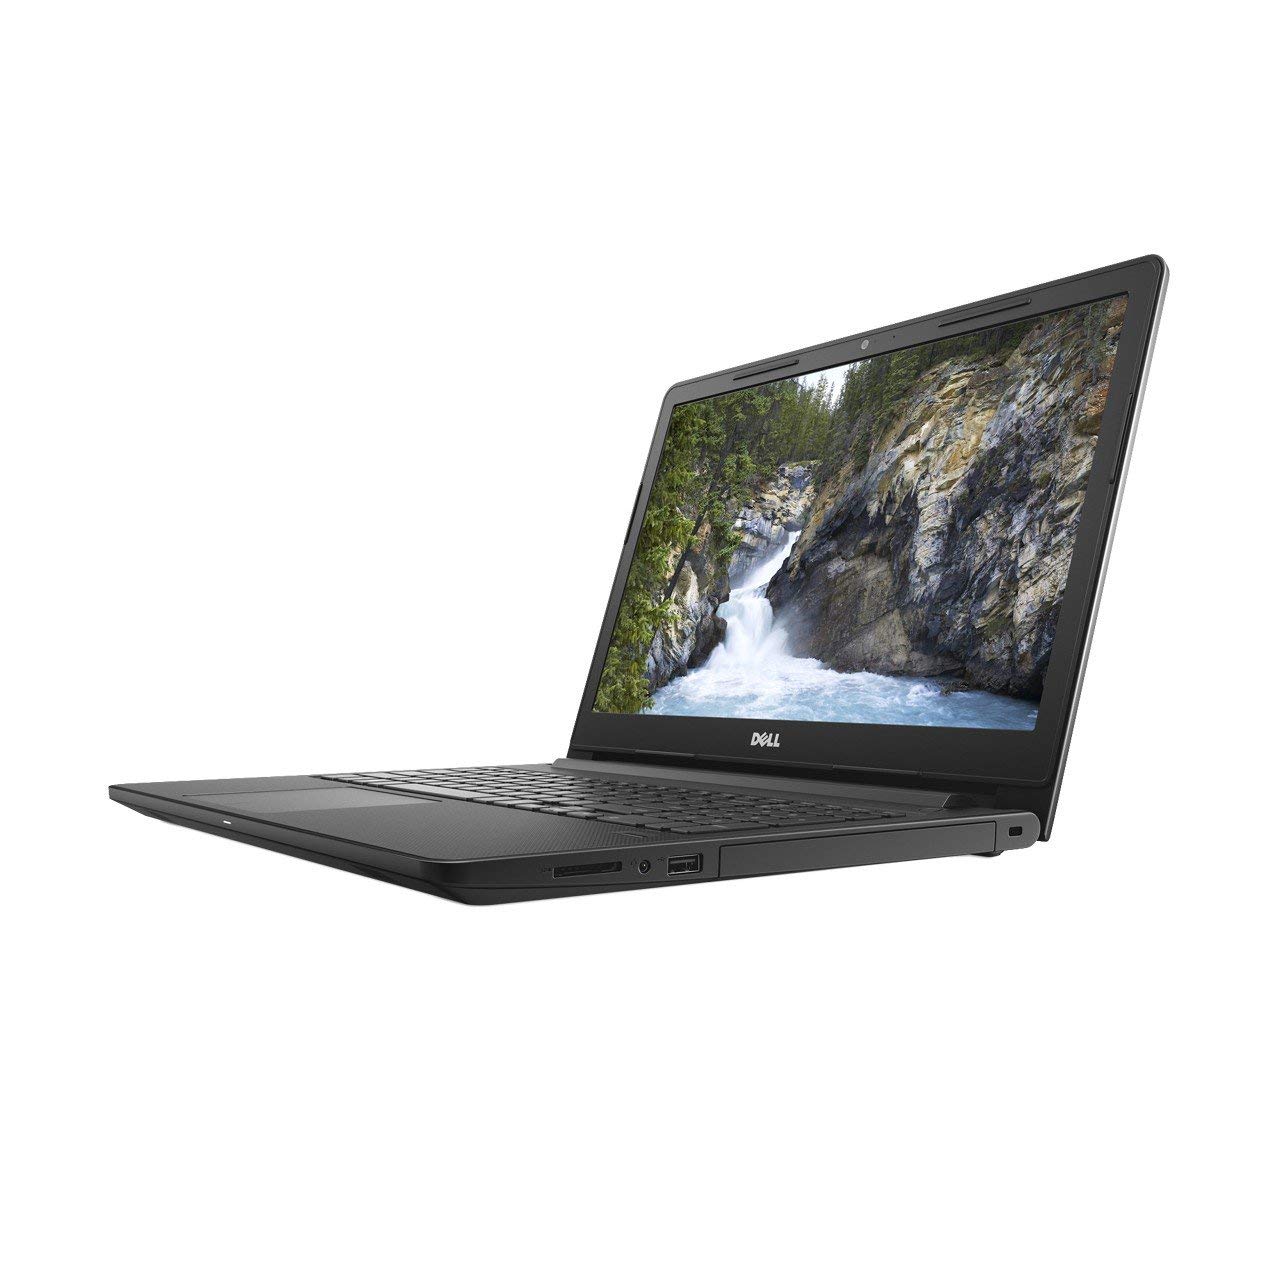 Dell Vostro 3578(i5 8th Gen/8GB/1TB/Win 10/2GB GFX) Laptop